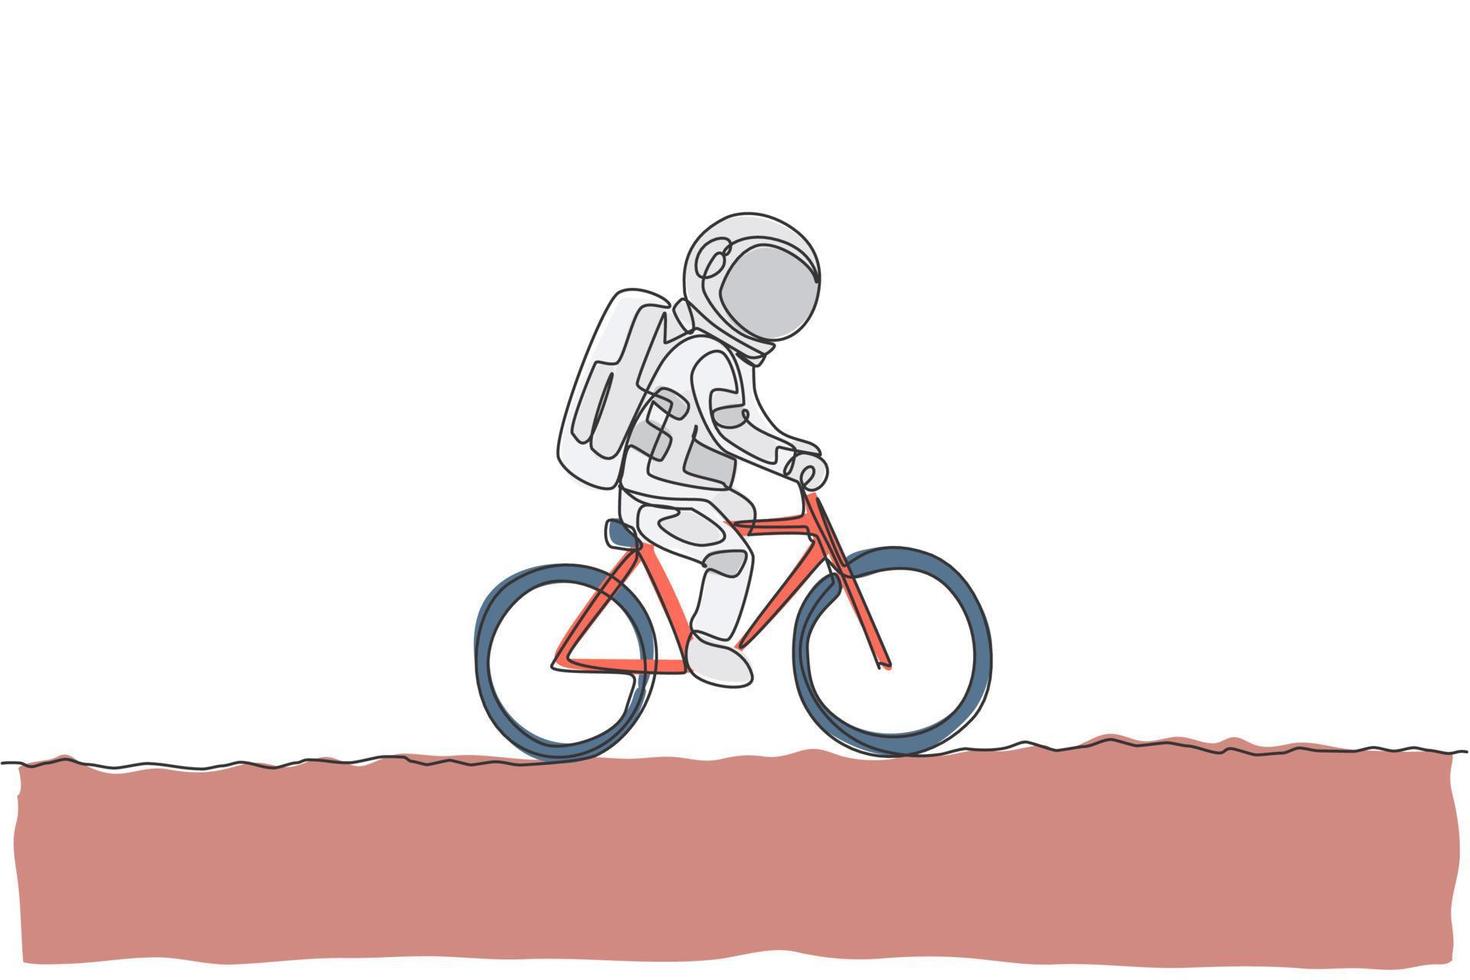 un dibujo de una sola línea del astronauta astronauta montando bicicleta en la superficie de la luna, ilustración de vector de galaxia cósmica. concepto de deporte de estilo de vida cosmonauta espacial saludable. diseño moderno de dibujo de línea continua